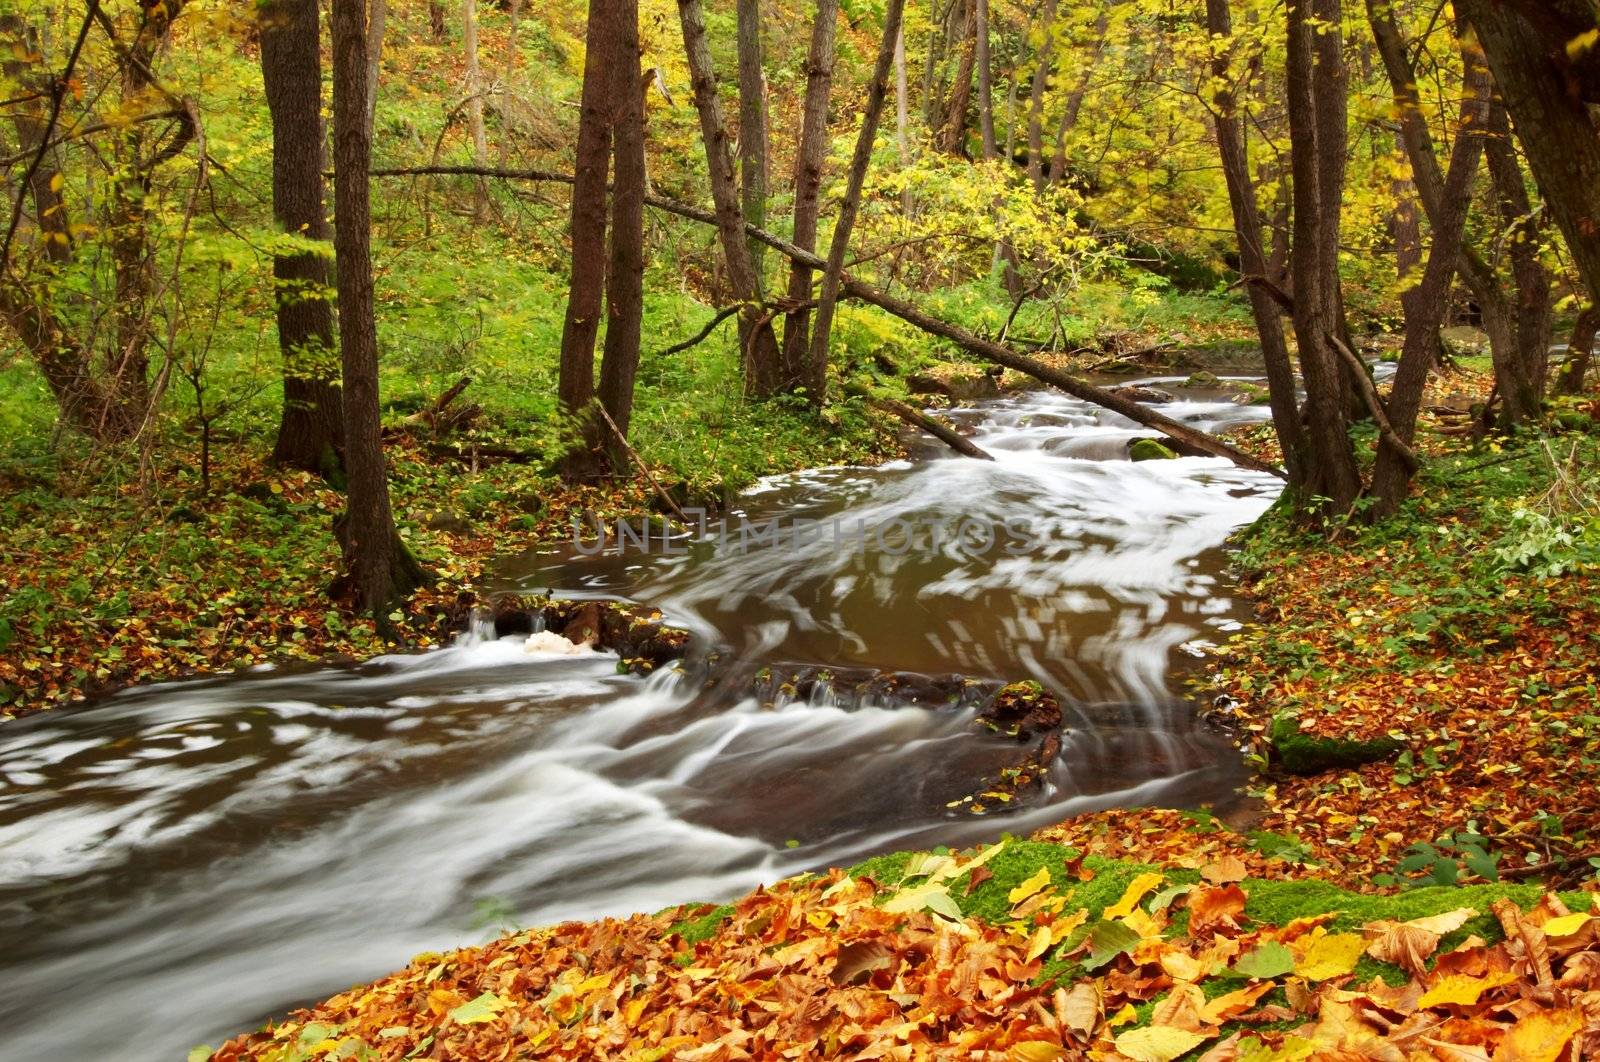 River amongst autumn trees by velkol